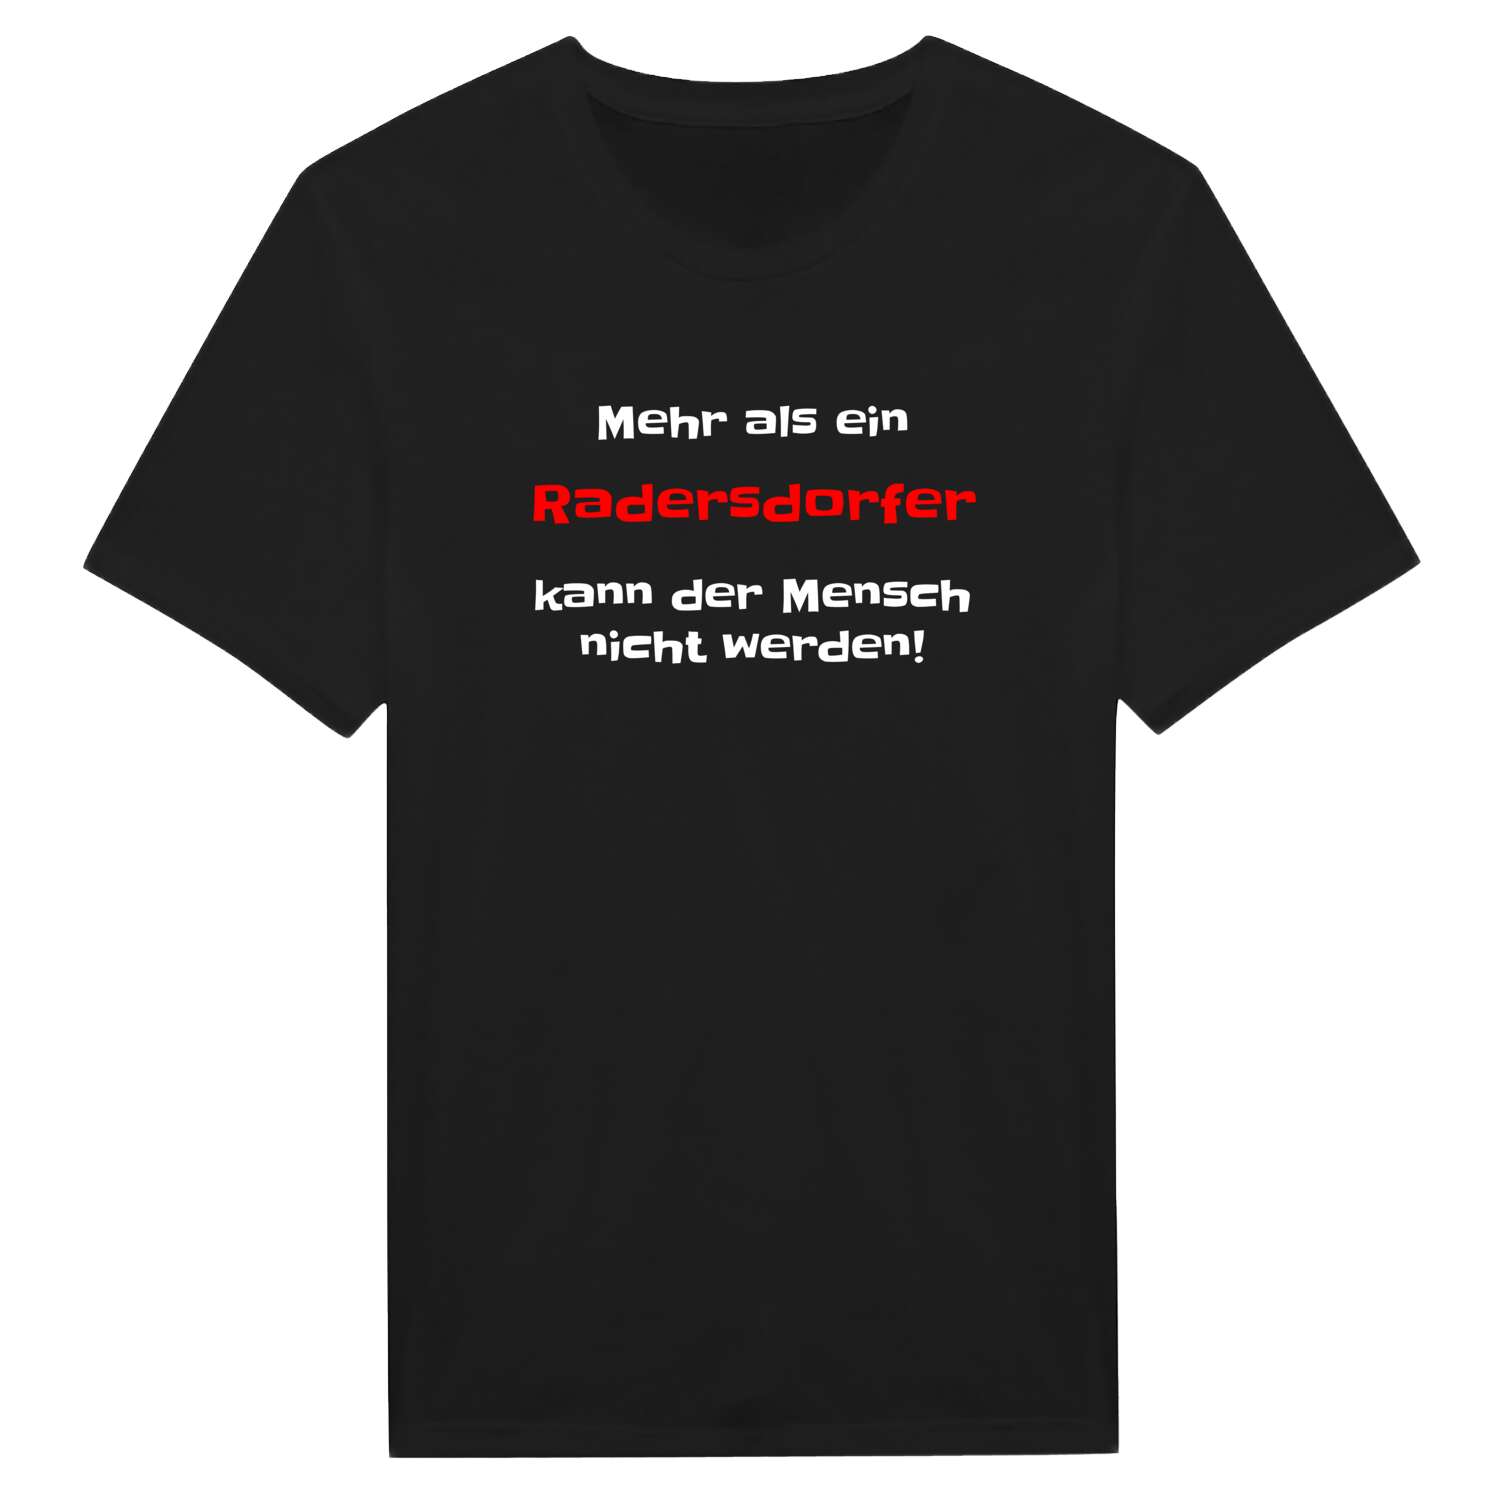 Radersdorf T-Shirt »Mehr als ein«